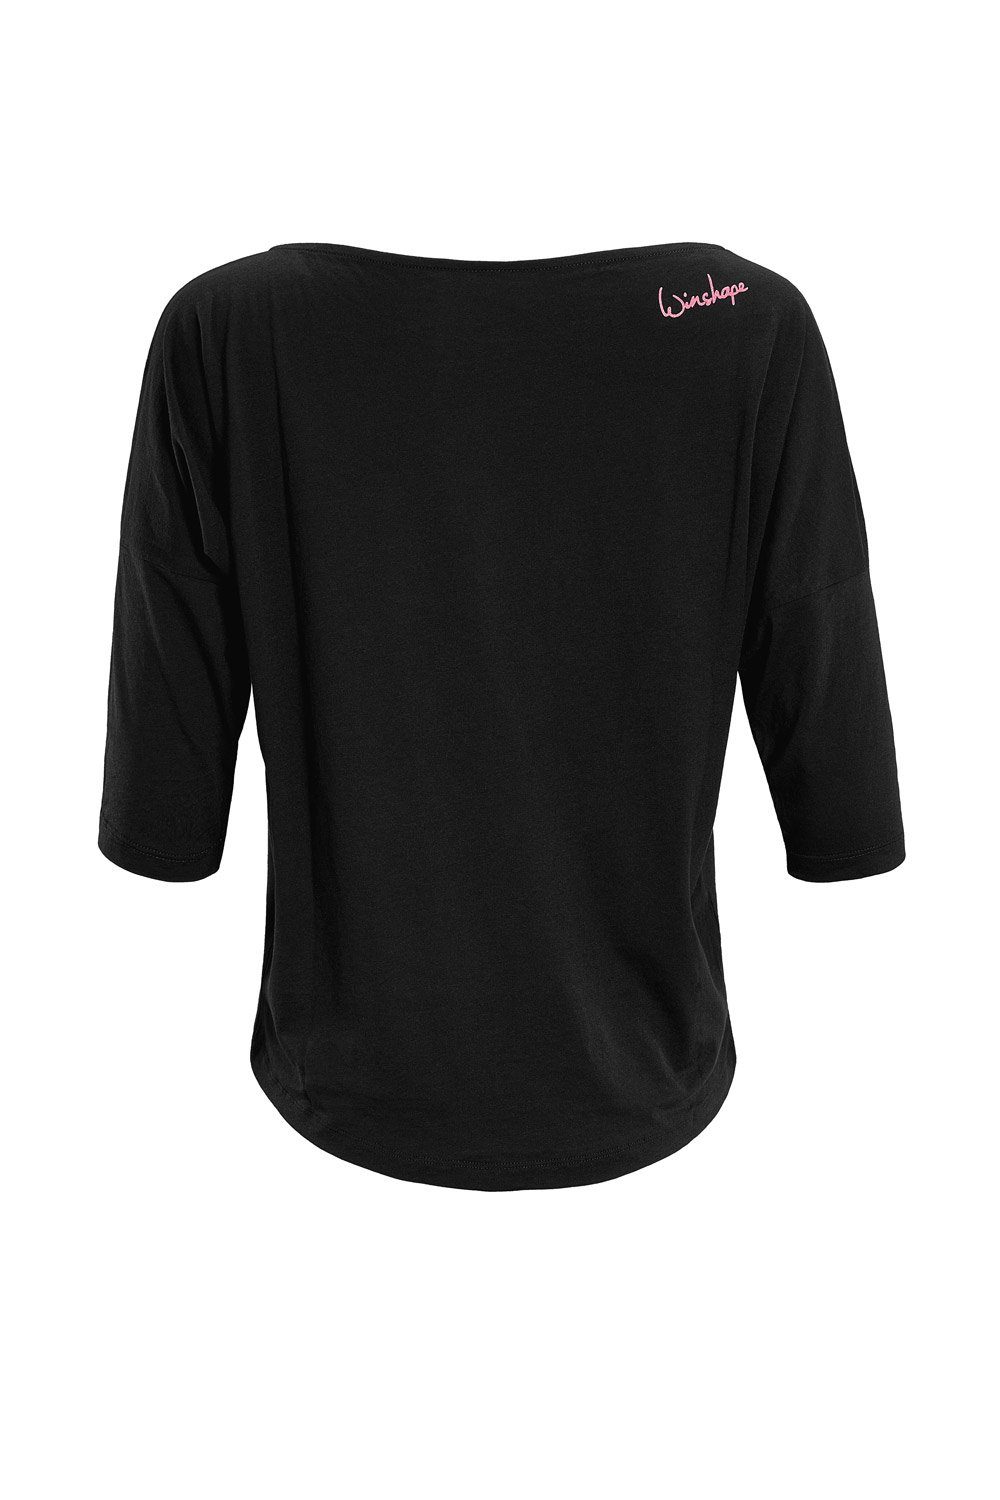 pinkem Glitzer-Aufdruck ultra Winshape leicht Neon mit 3/4-Arm-Shirt MCS001